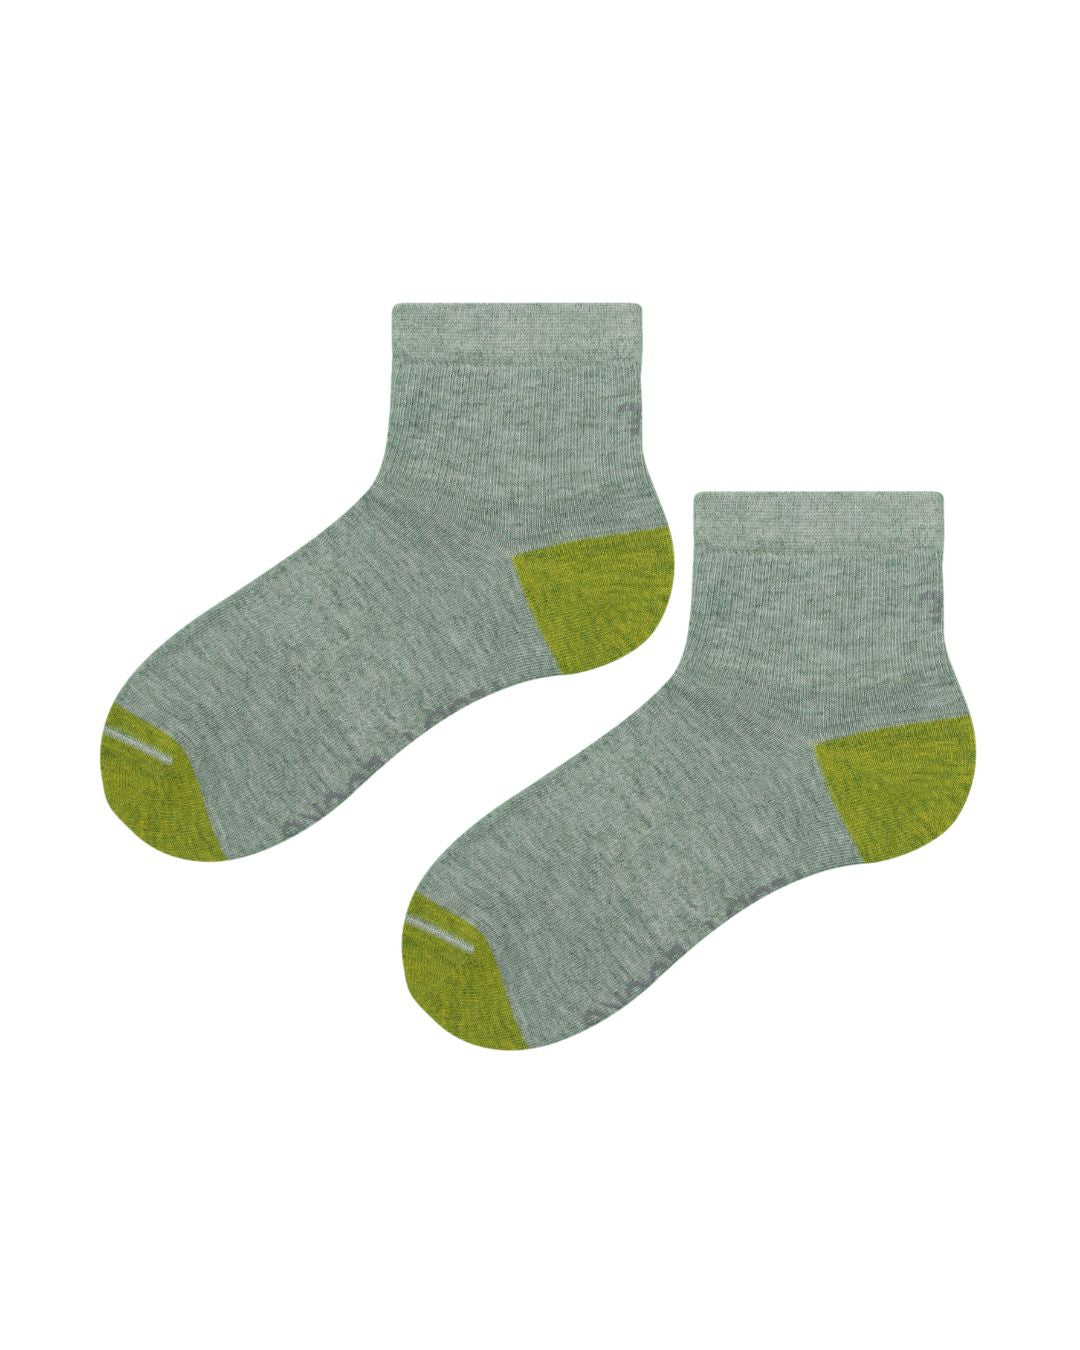 Green quarter length sock. Sport sock, athletic sock, ankle length sock